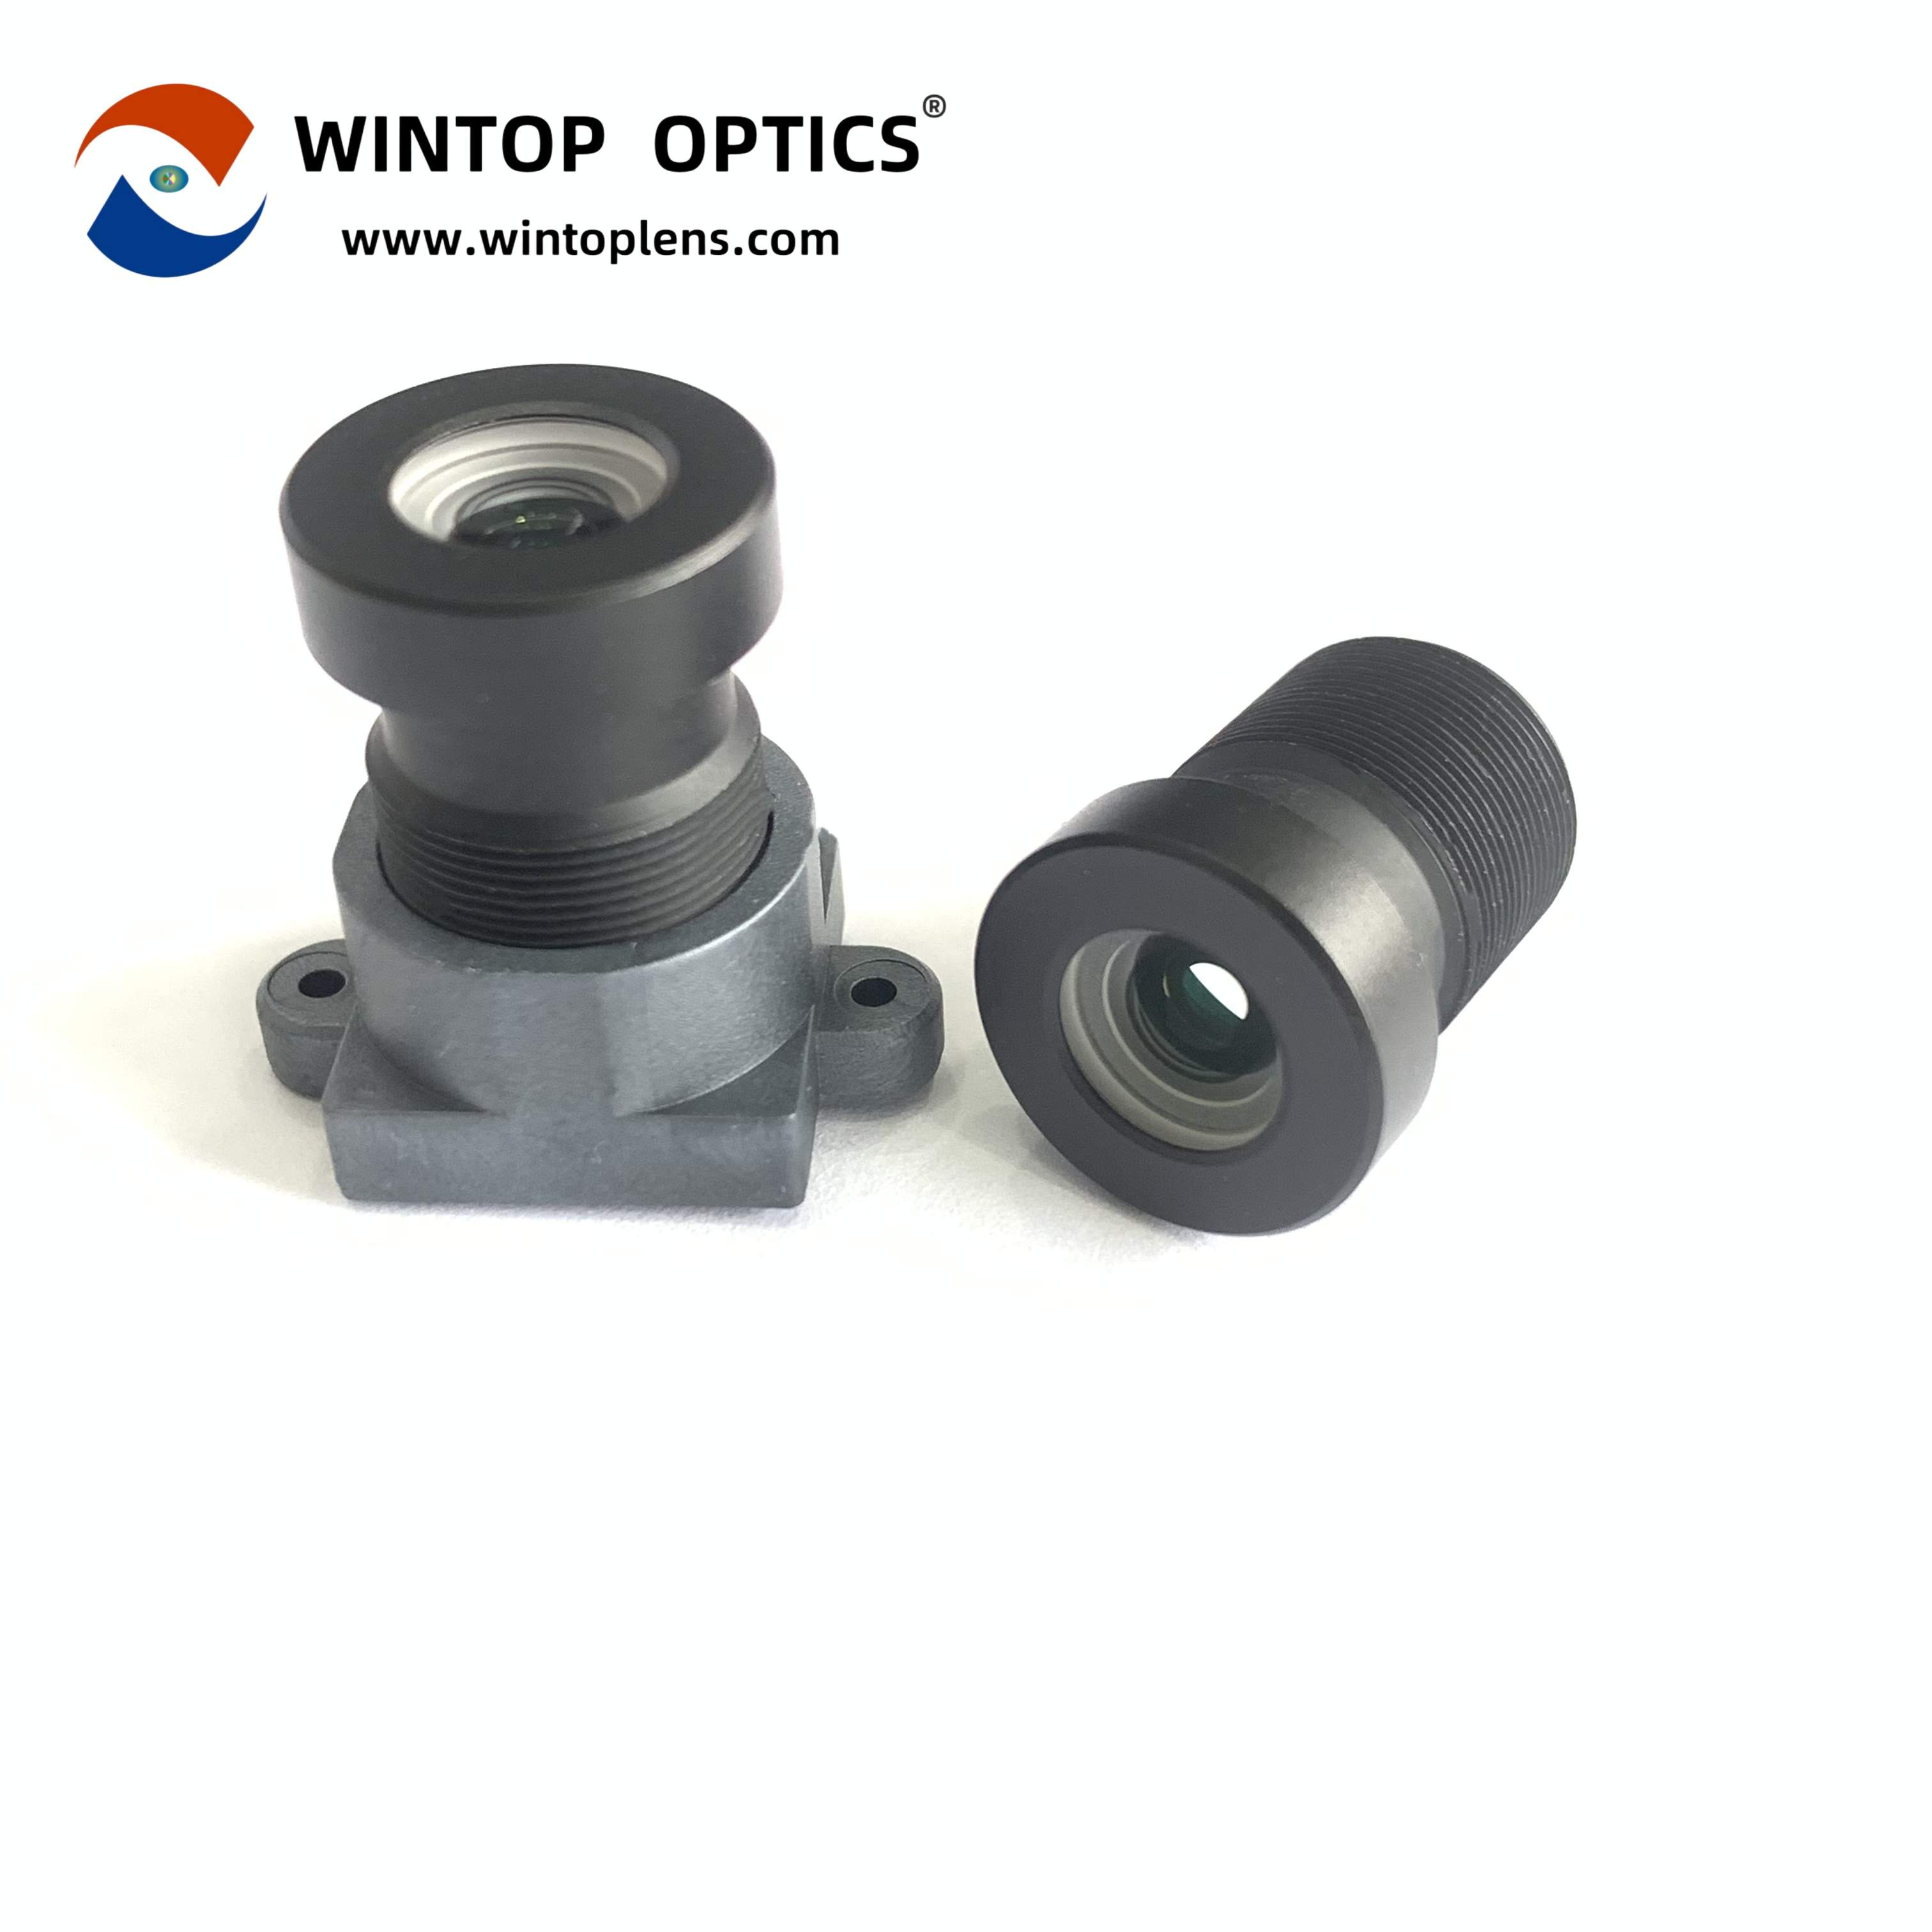 Objectifs de caméra de véhicule ADAS, enregistreur de conduite assistée Intelligent, objectif YT-7591-D1 - WINTOP OPTICS